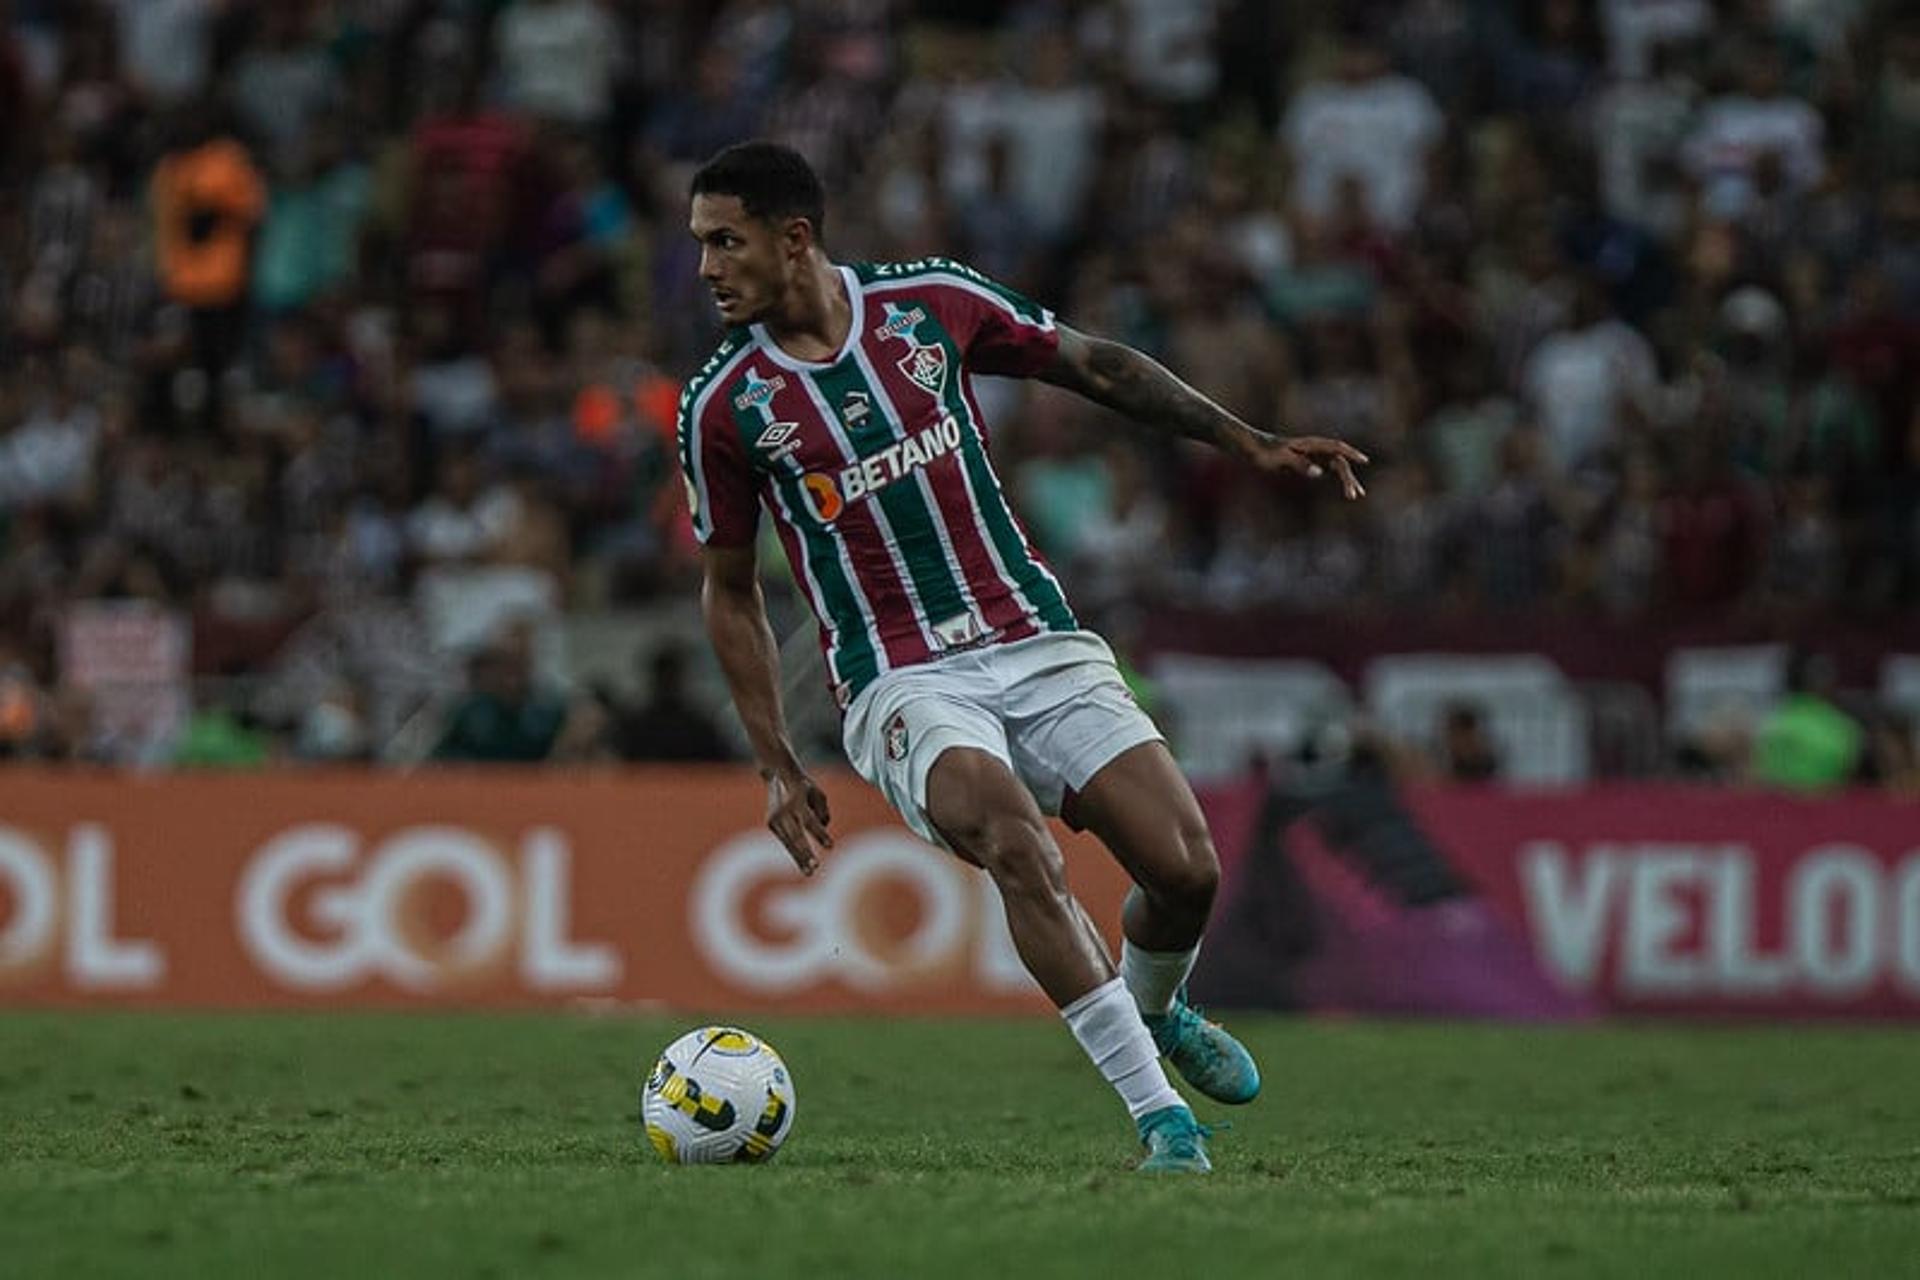 Fluminense x Palmeiras - Cristiano